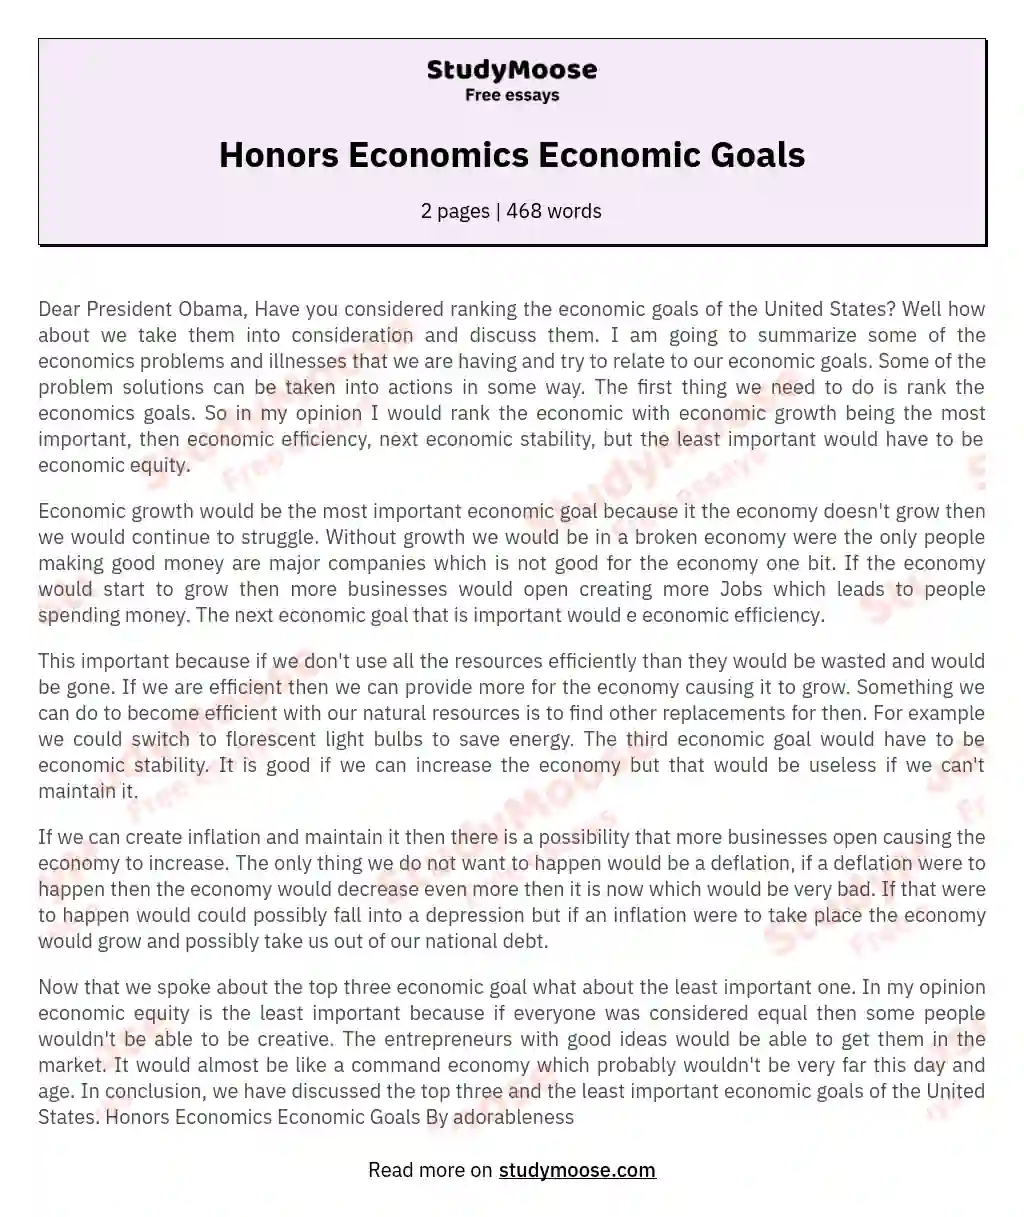 Honors Economics Economic Goals essay